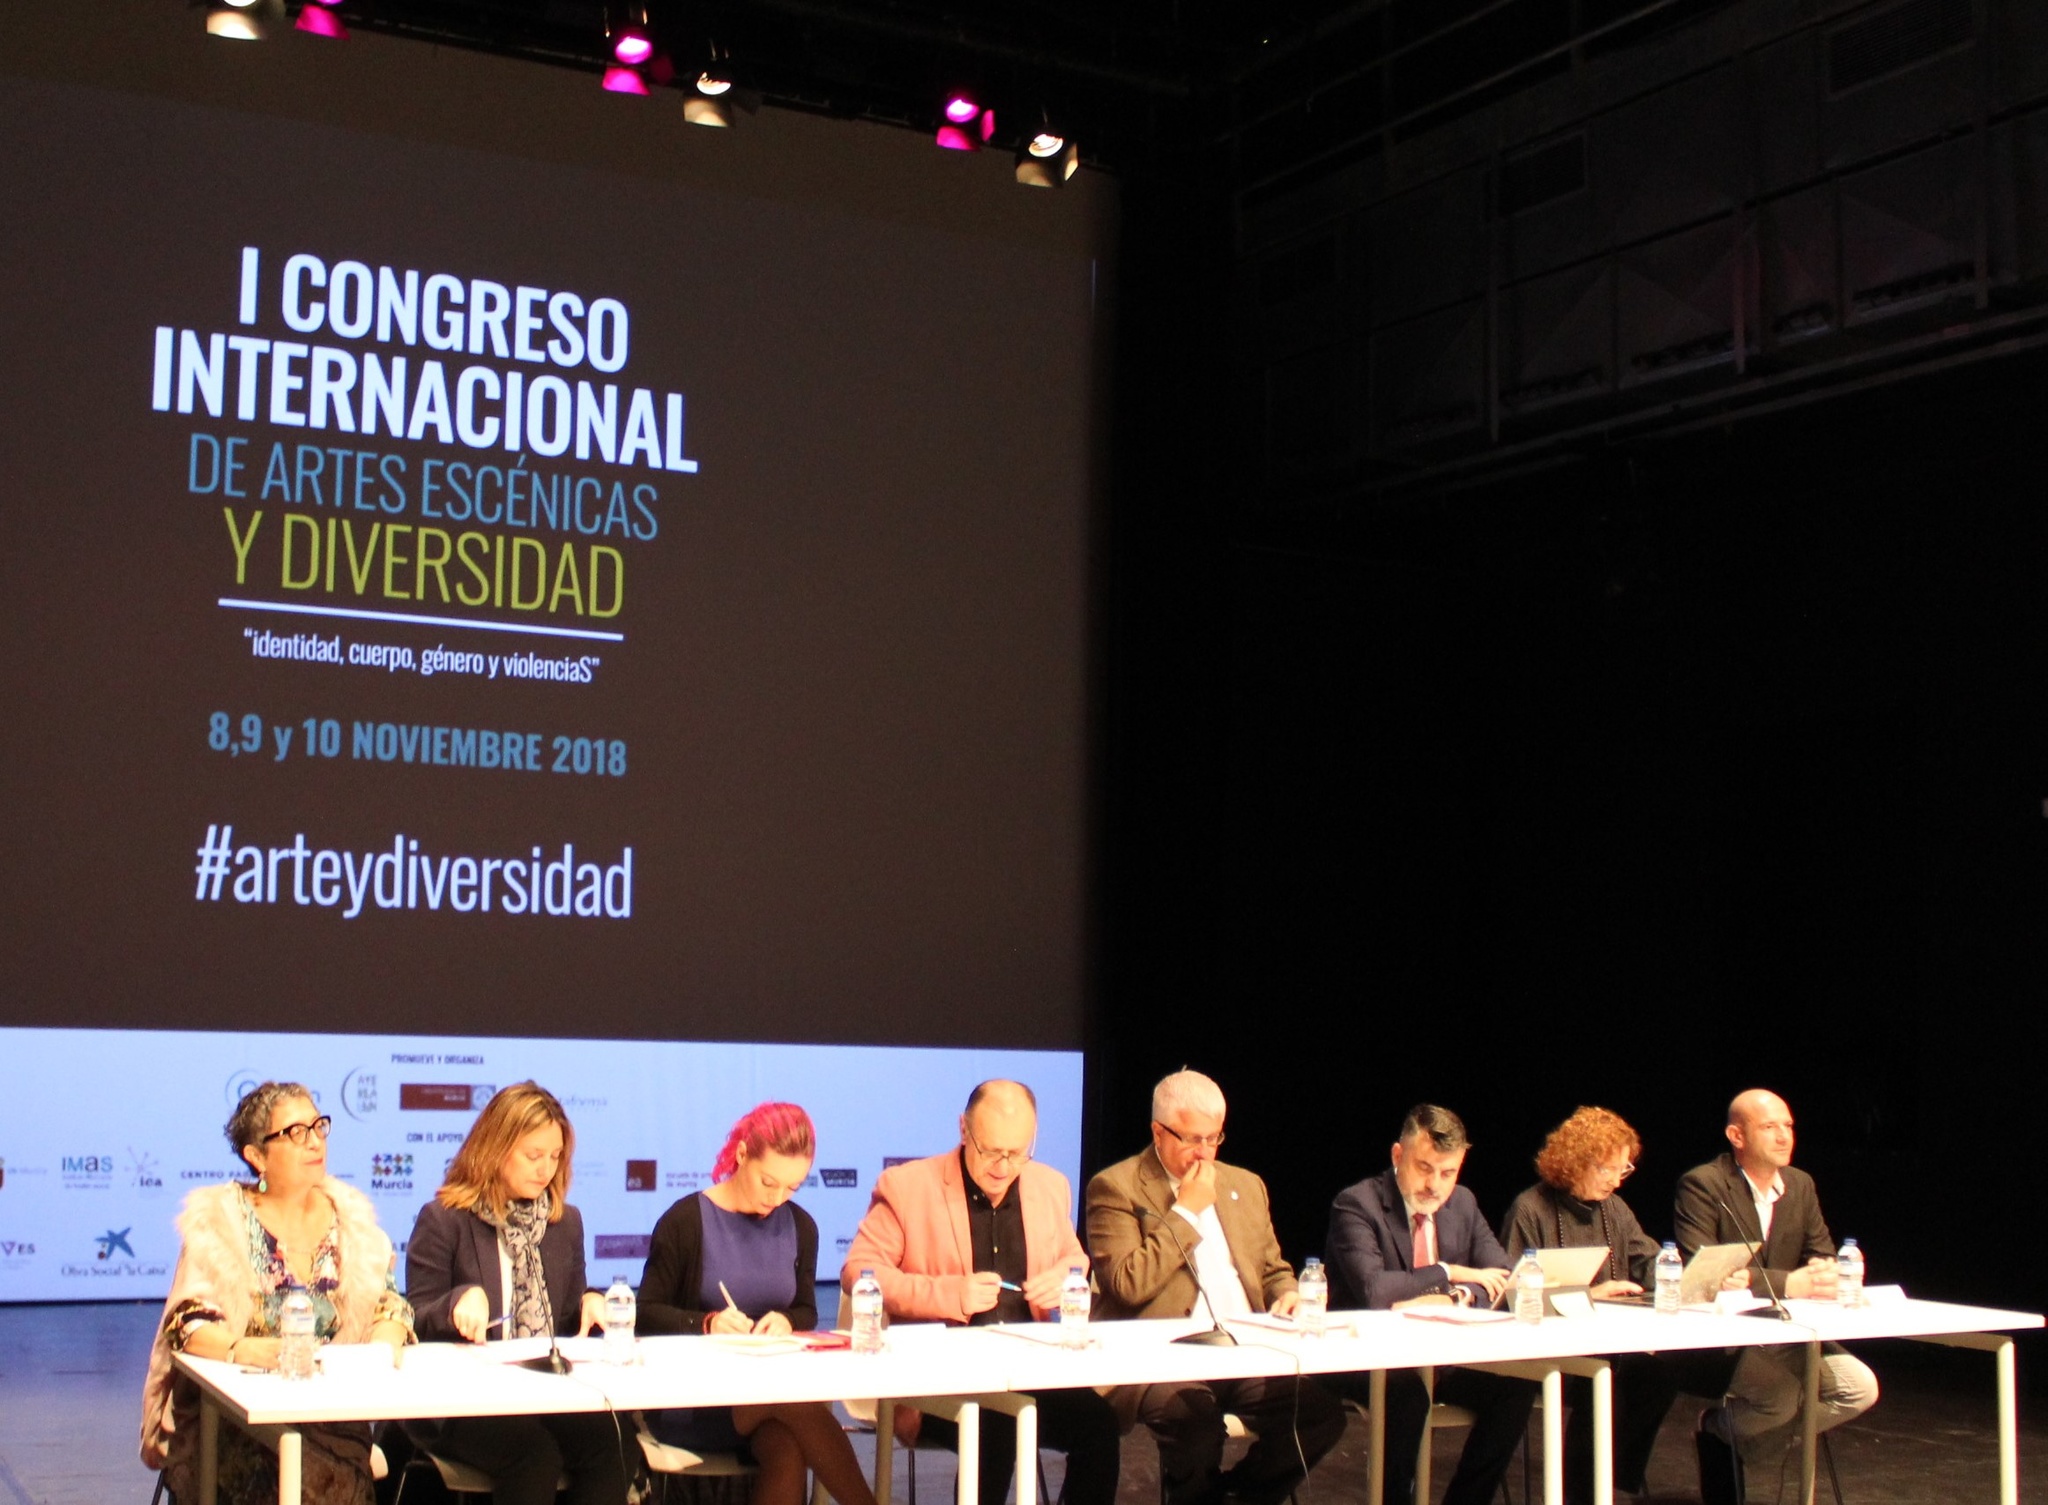 Inauguración del I Congreso Internacional de Artes Escénicas y Diversidad